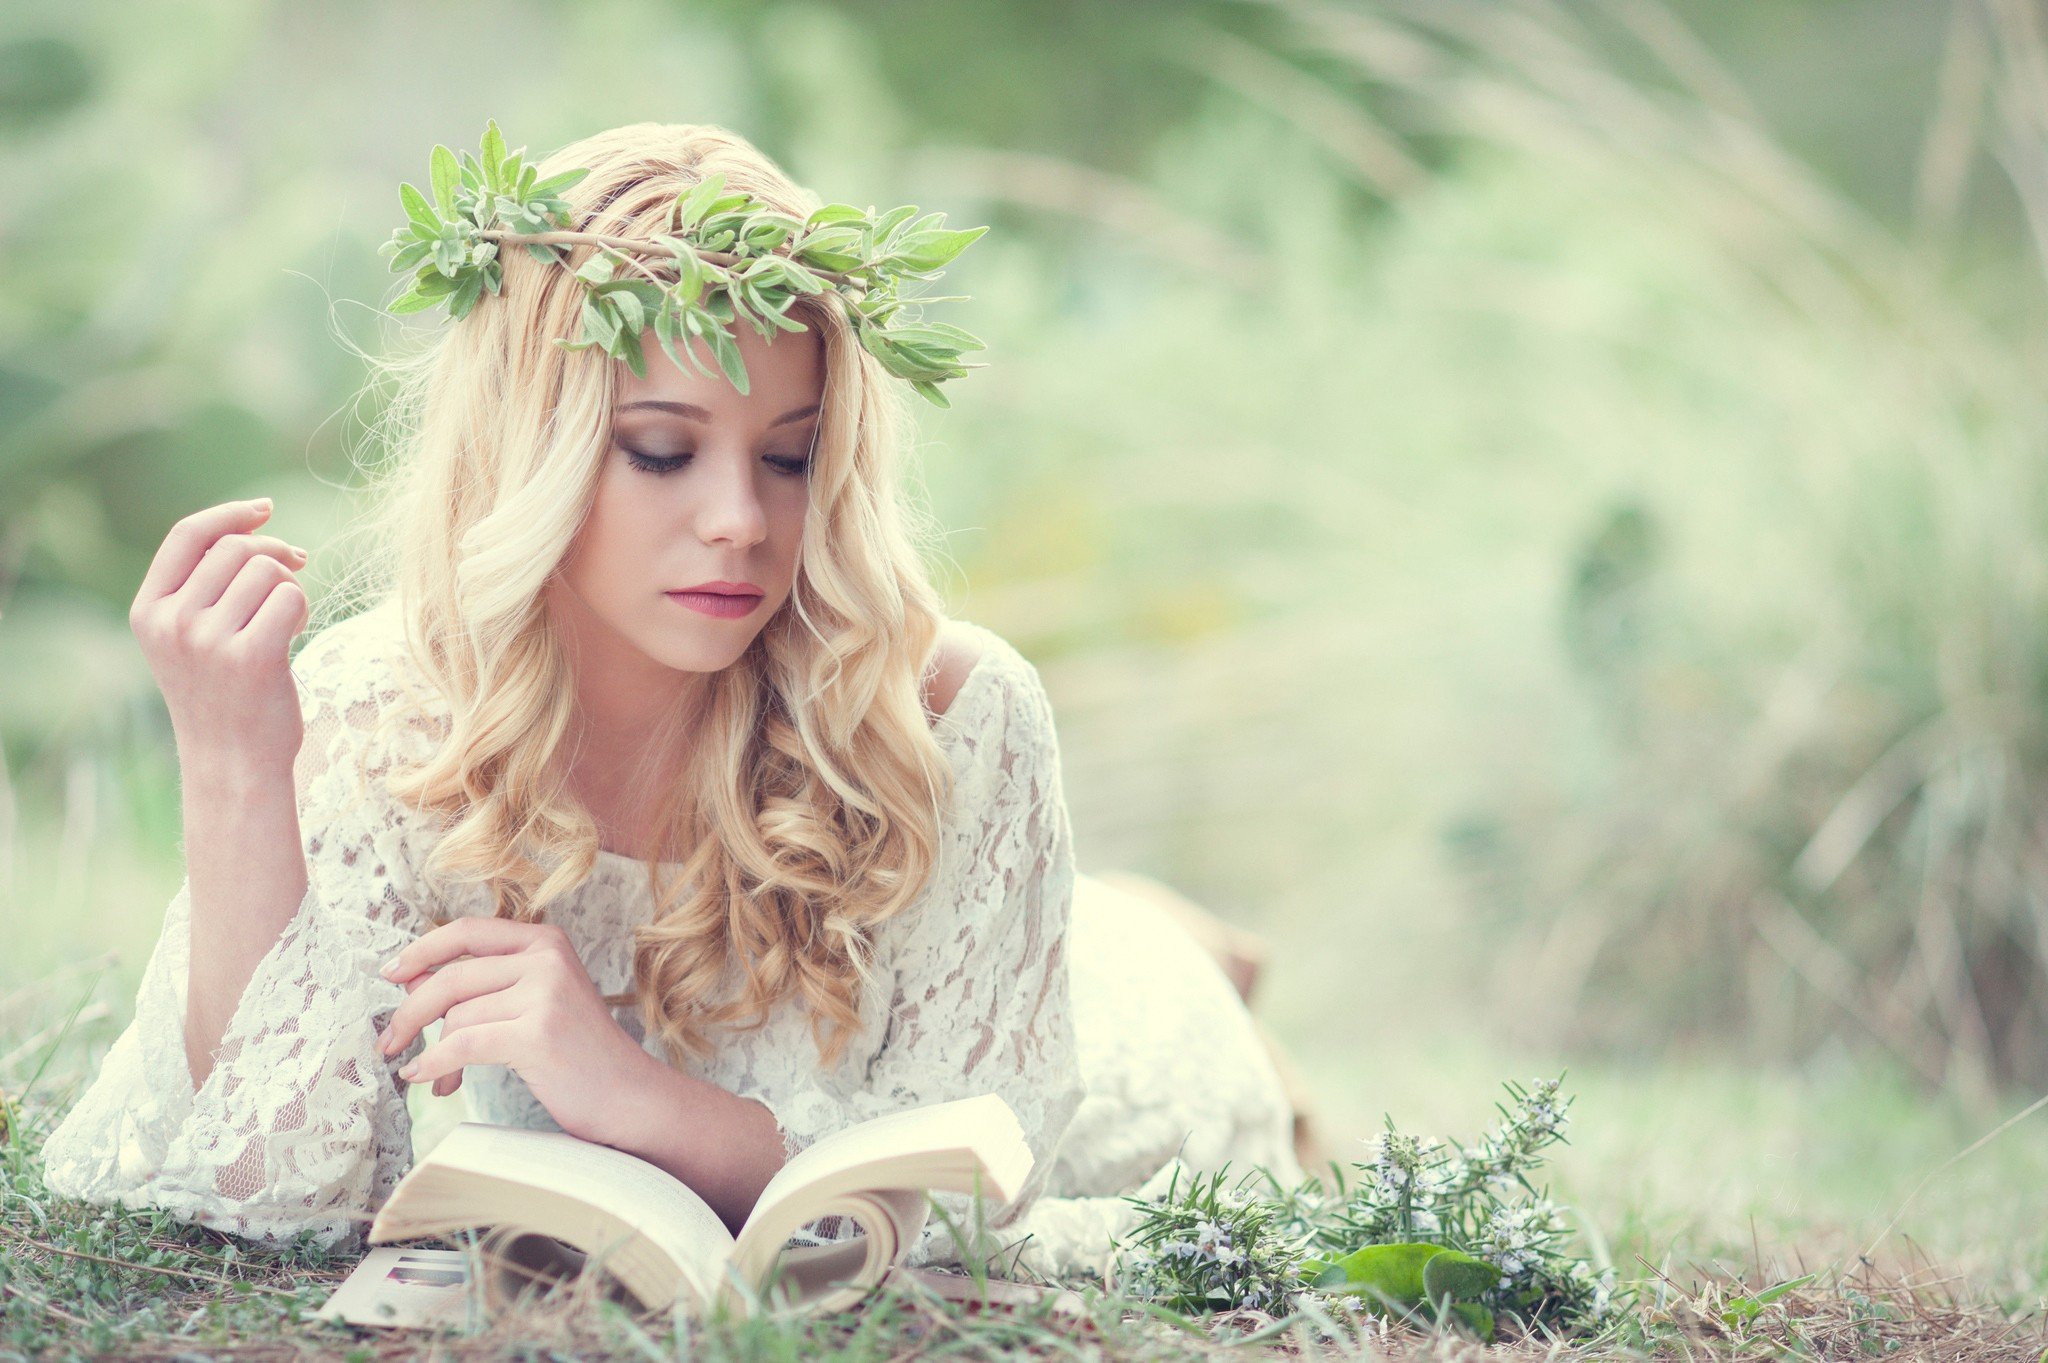 women, Blonde, Long hair, Model, Women outdoors, Reading, Books, White dress, Nature, Grass, Wreaths Wallpaper